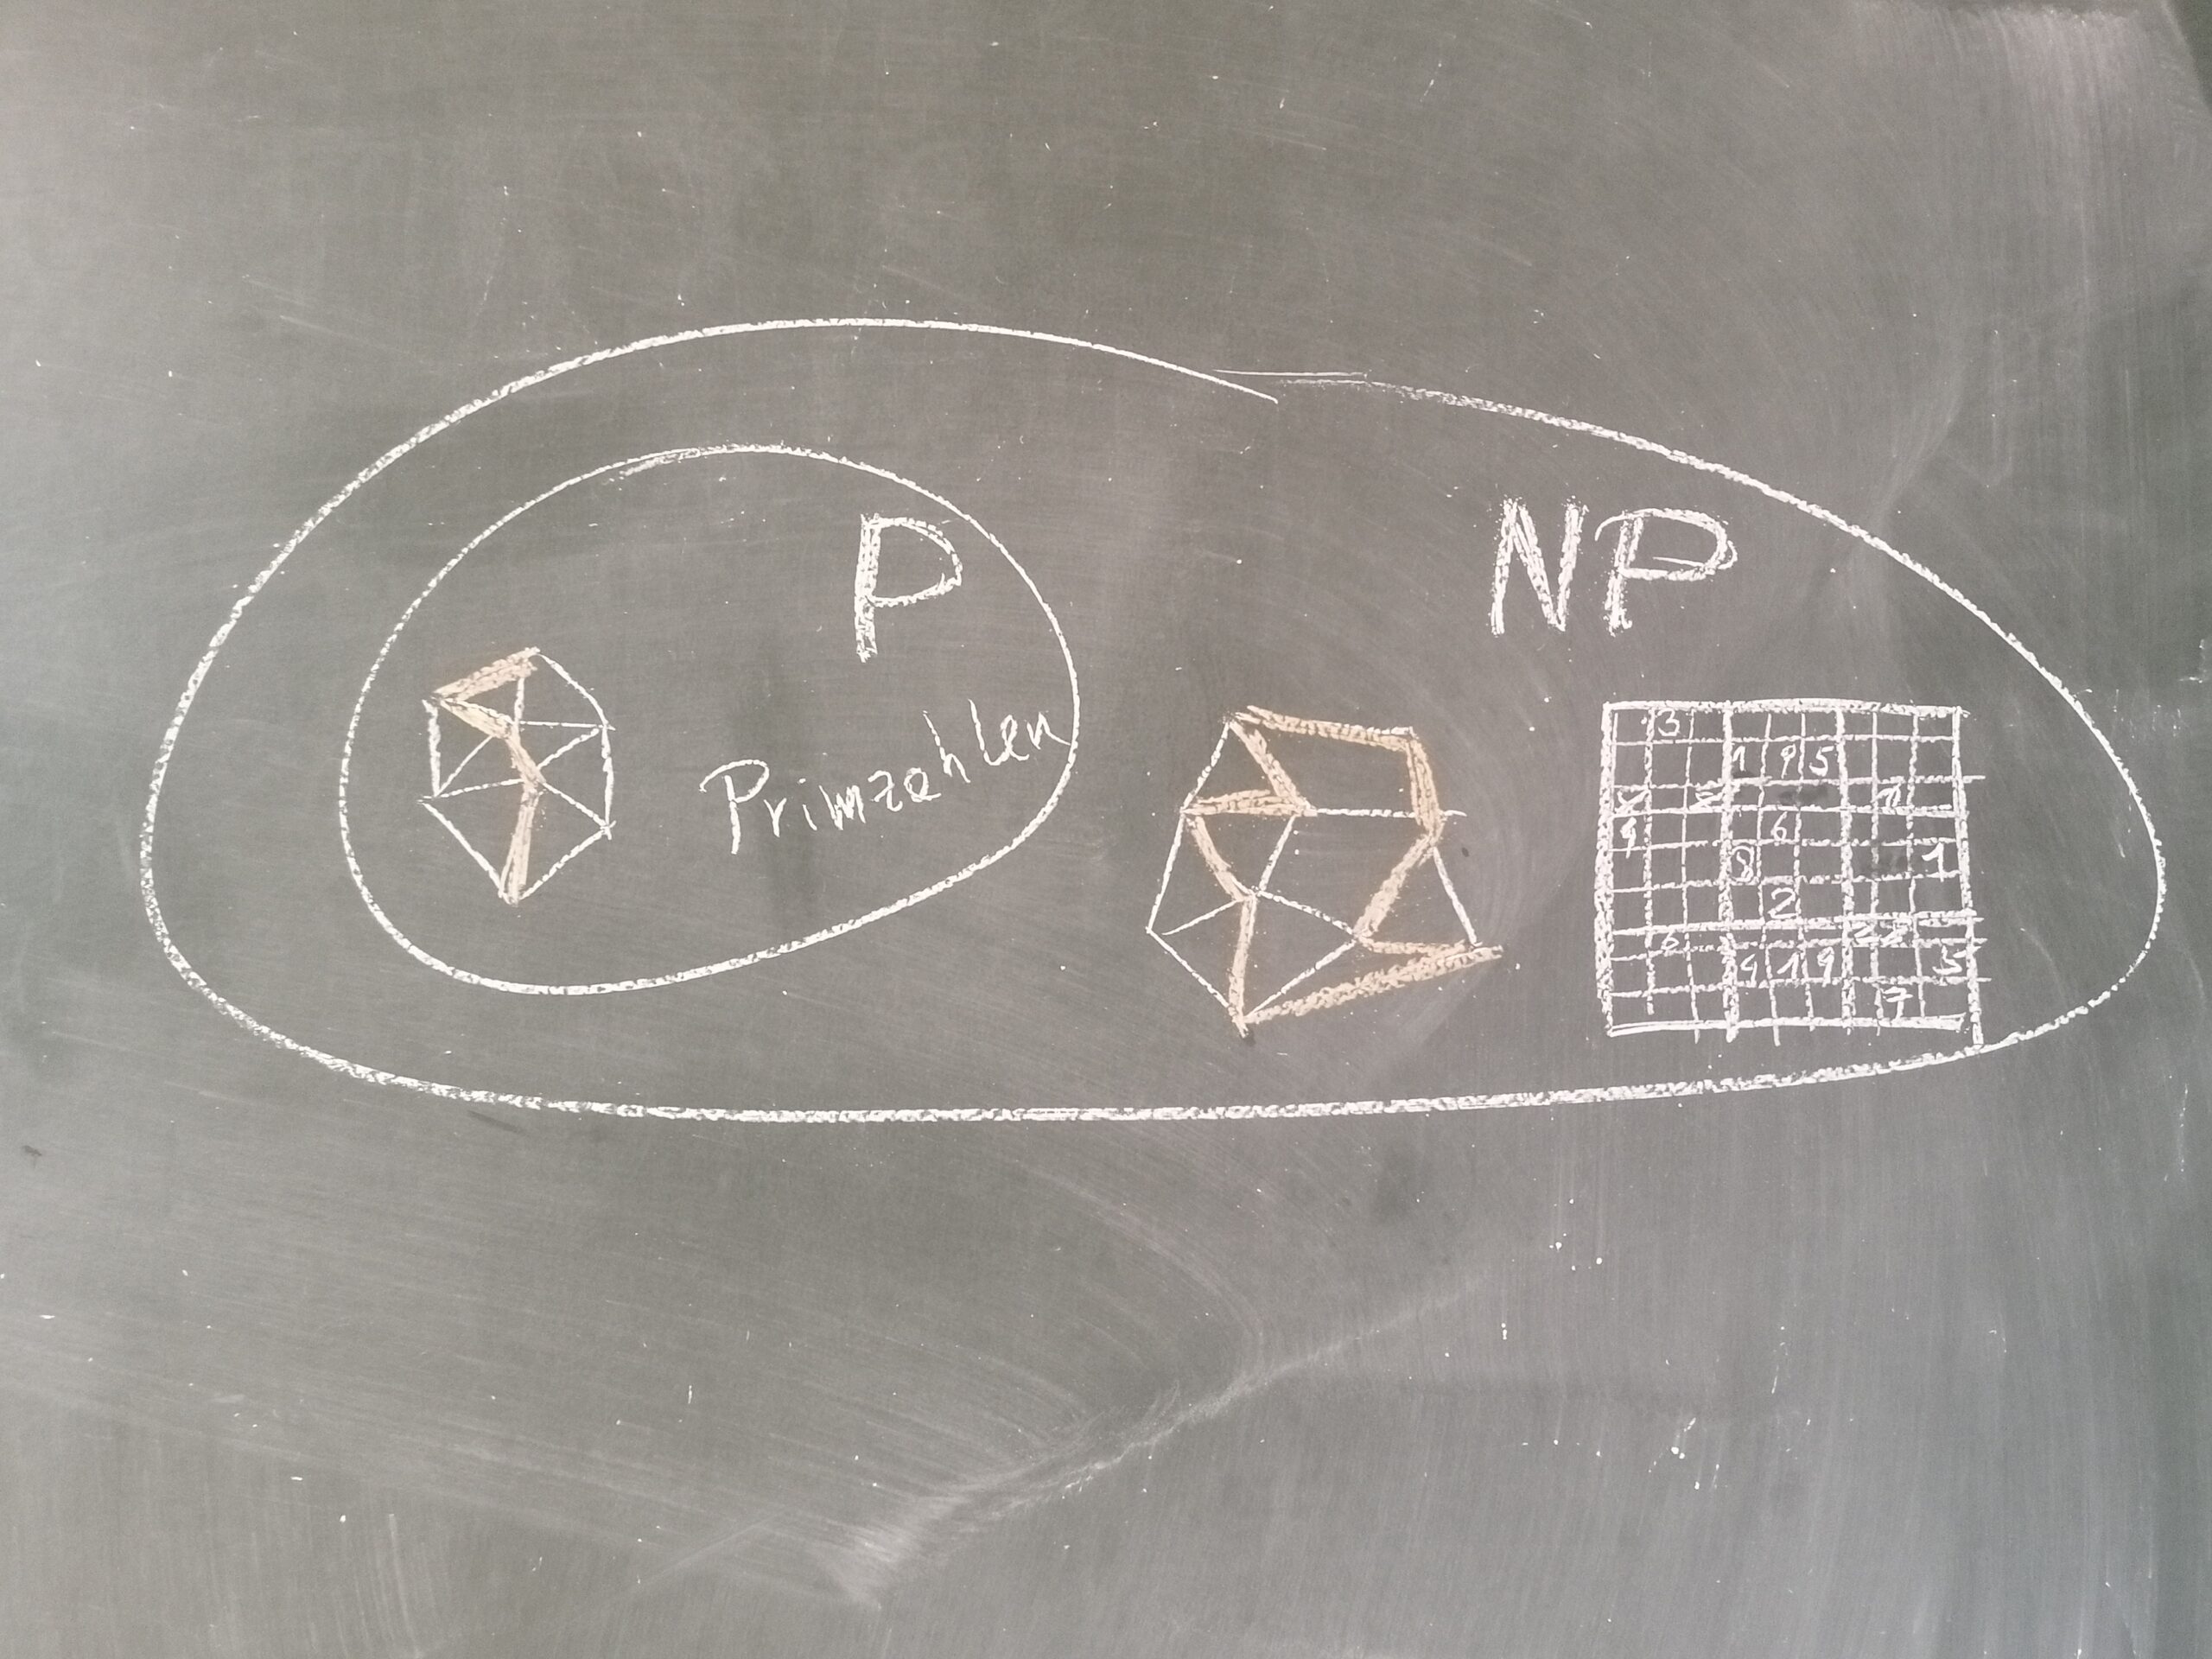 Tafelbild, auf dem das P-NP-Problem dargestellt wird